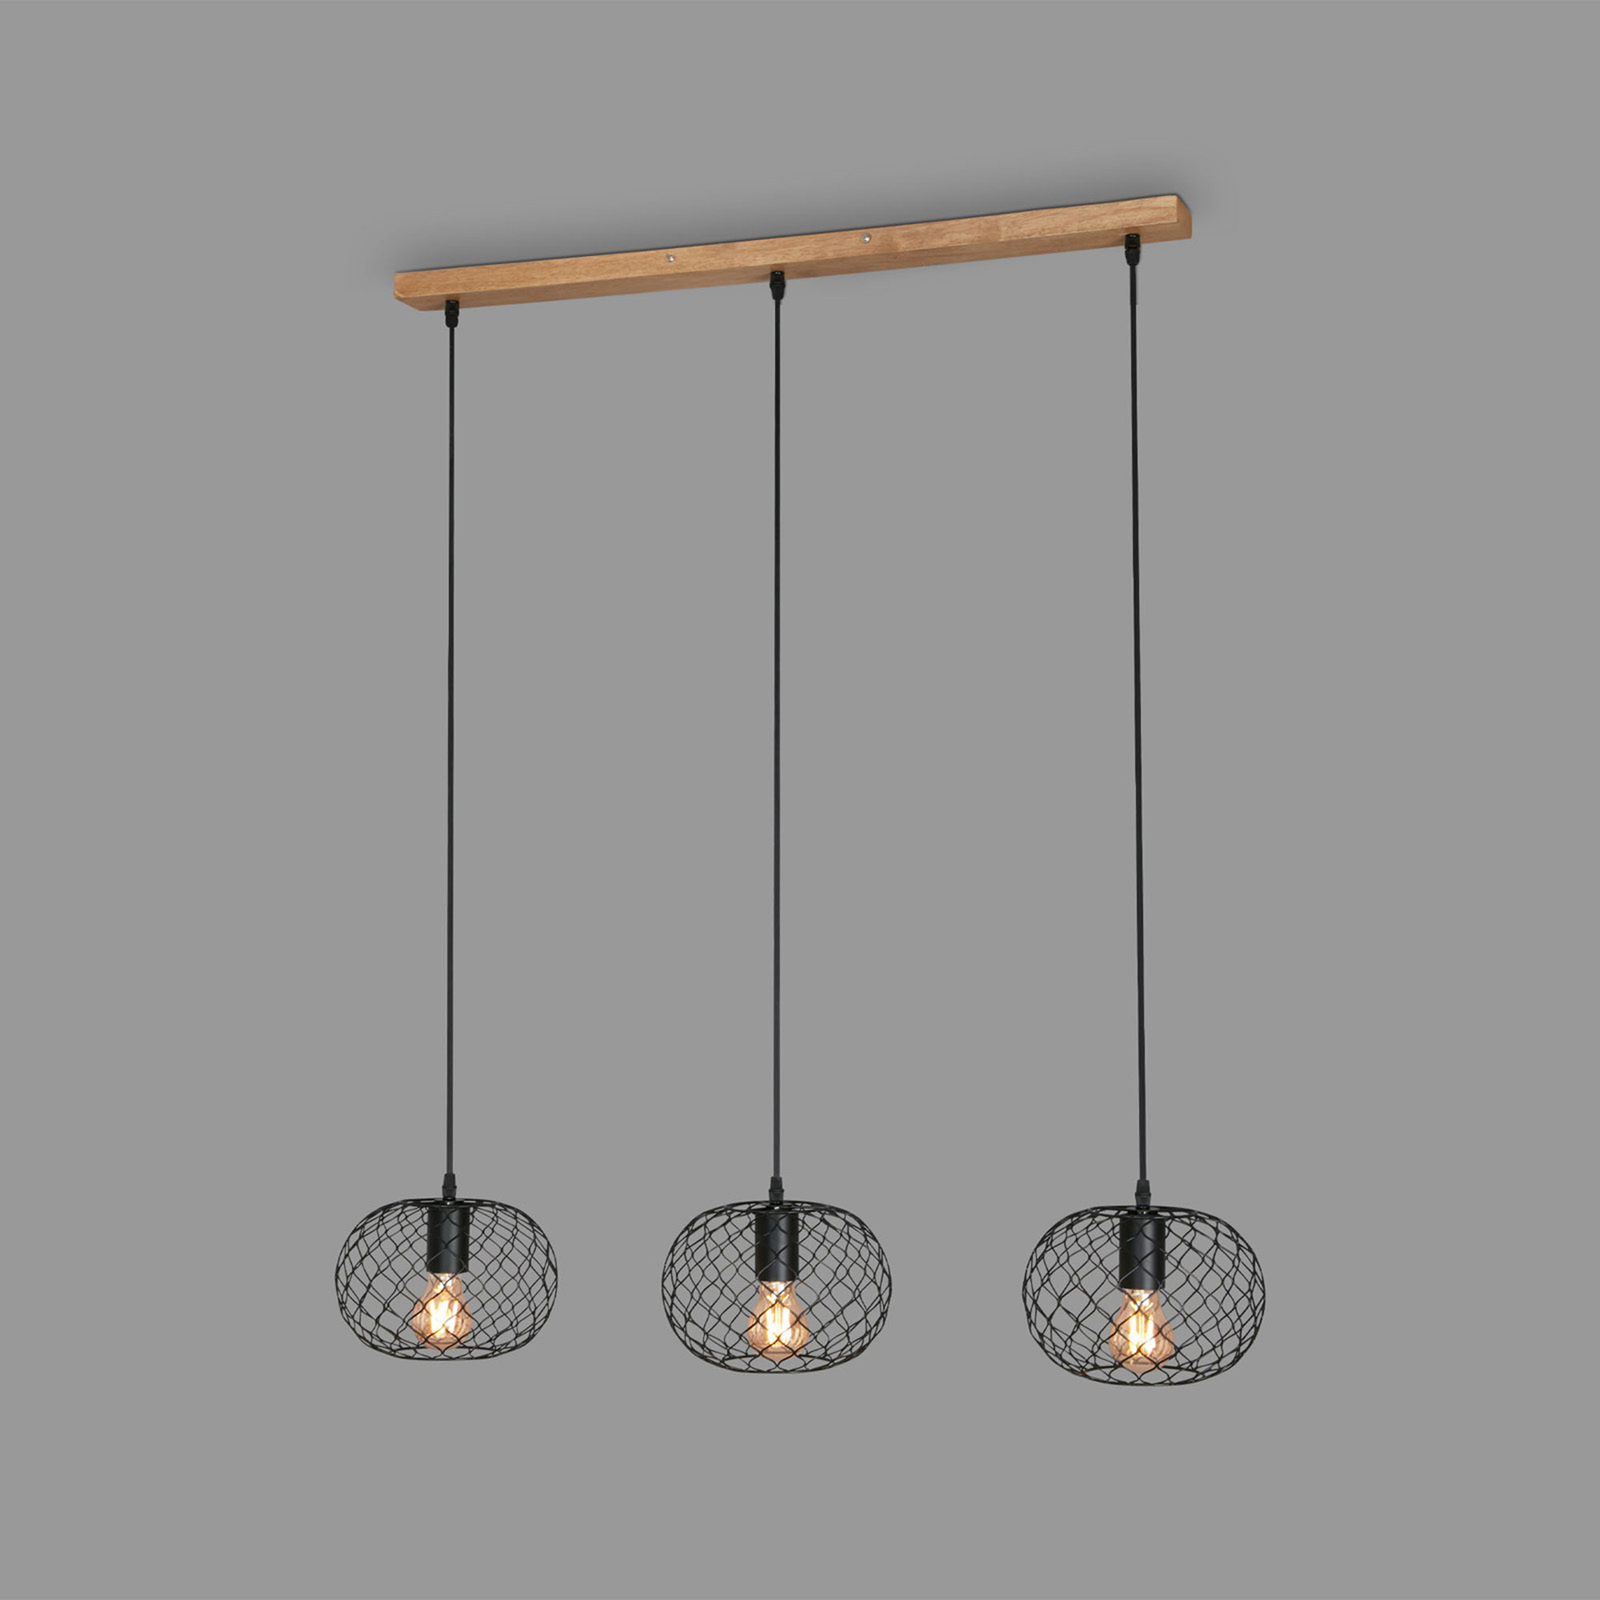 Hanglamp Winki Vintage, zwart/hout, 3-lamps